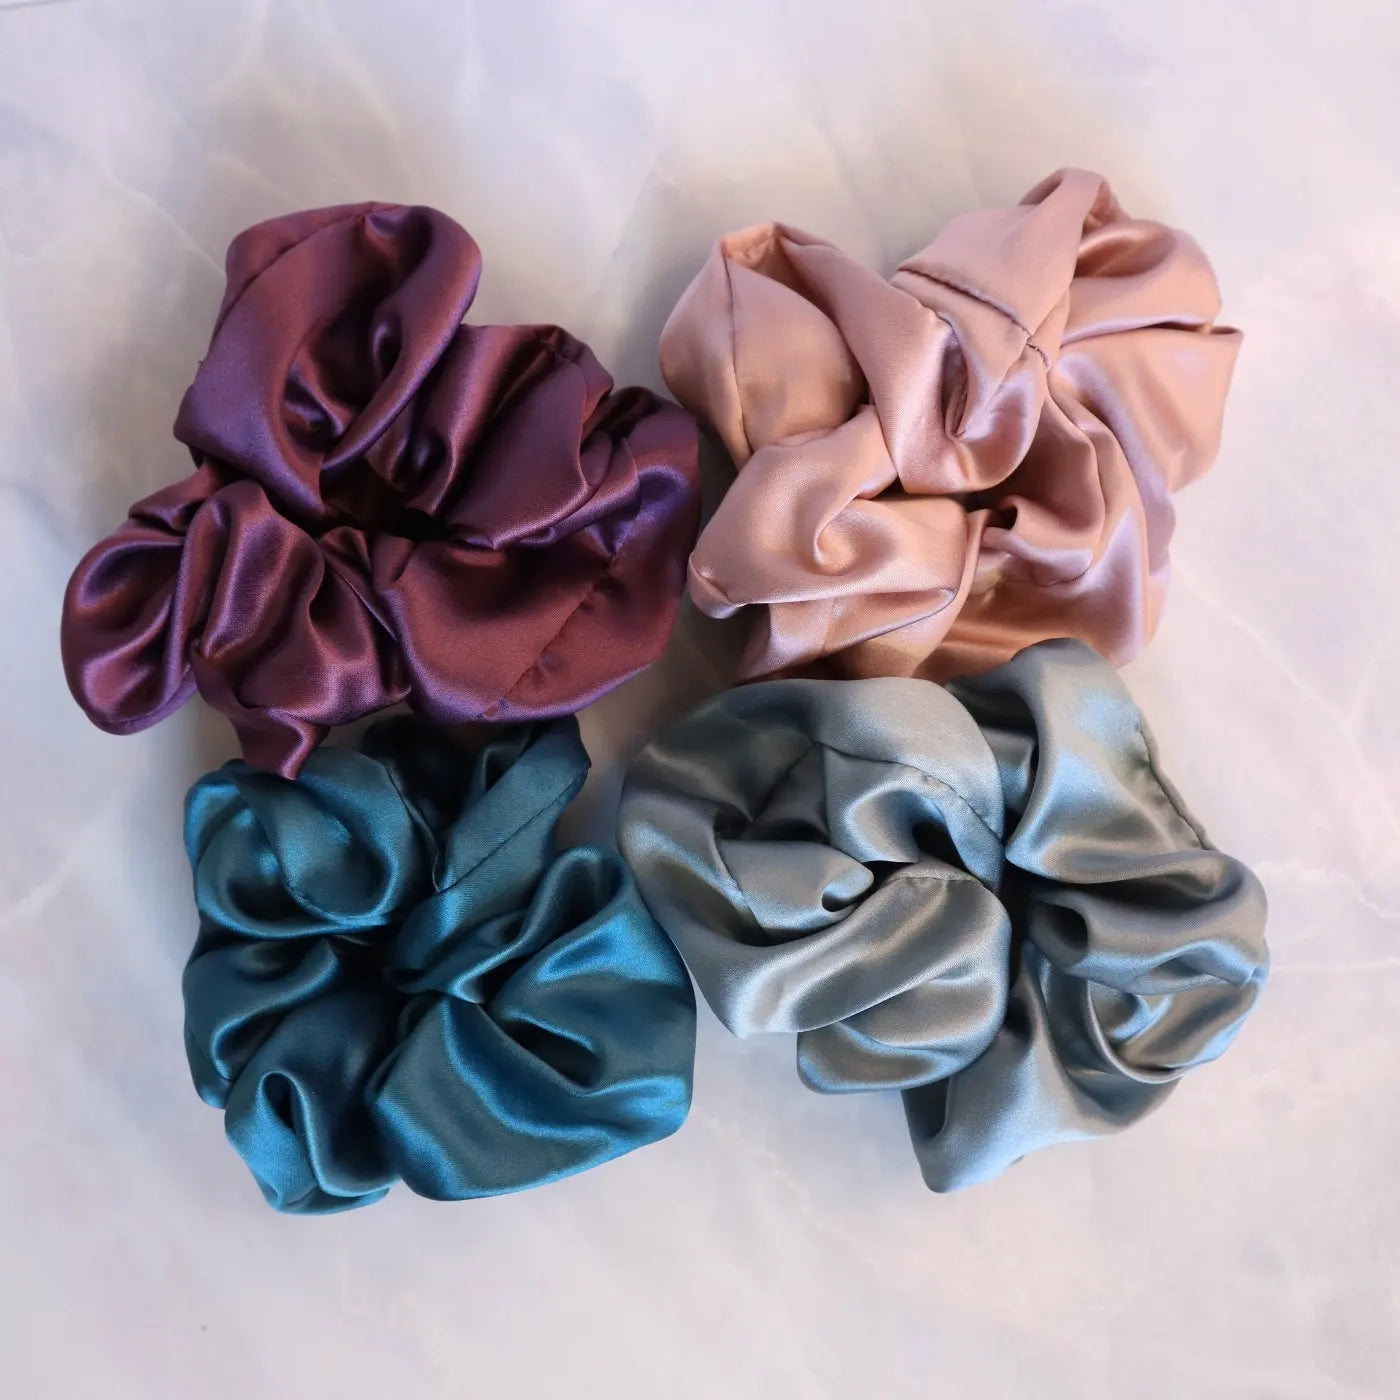 4 Silk Hair Scrunchie Set - Pink, Purple, Teal, Light Blue Hair Ties